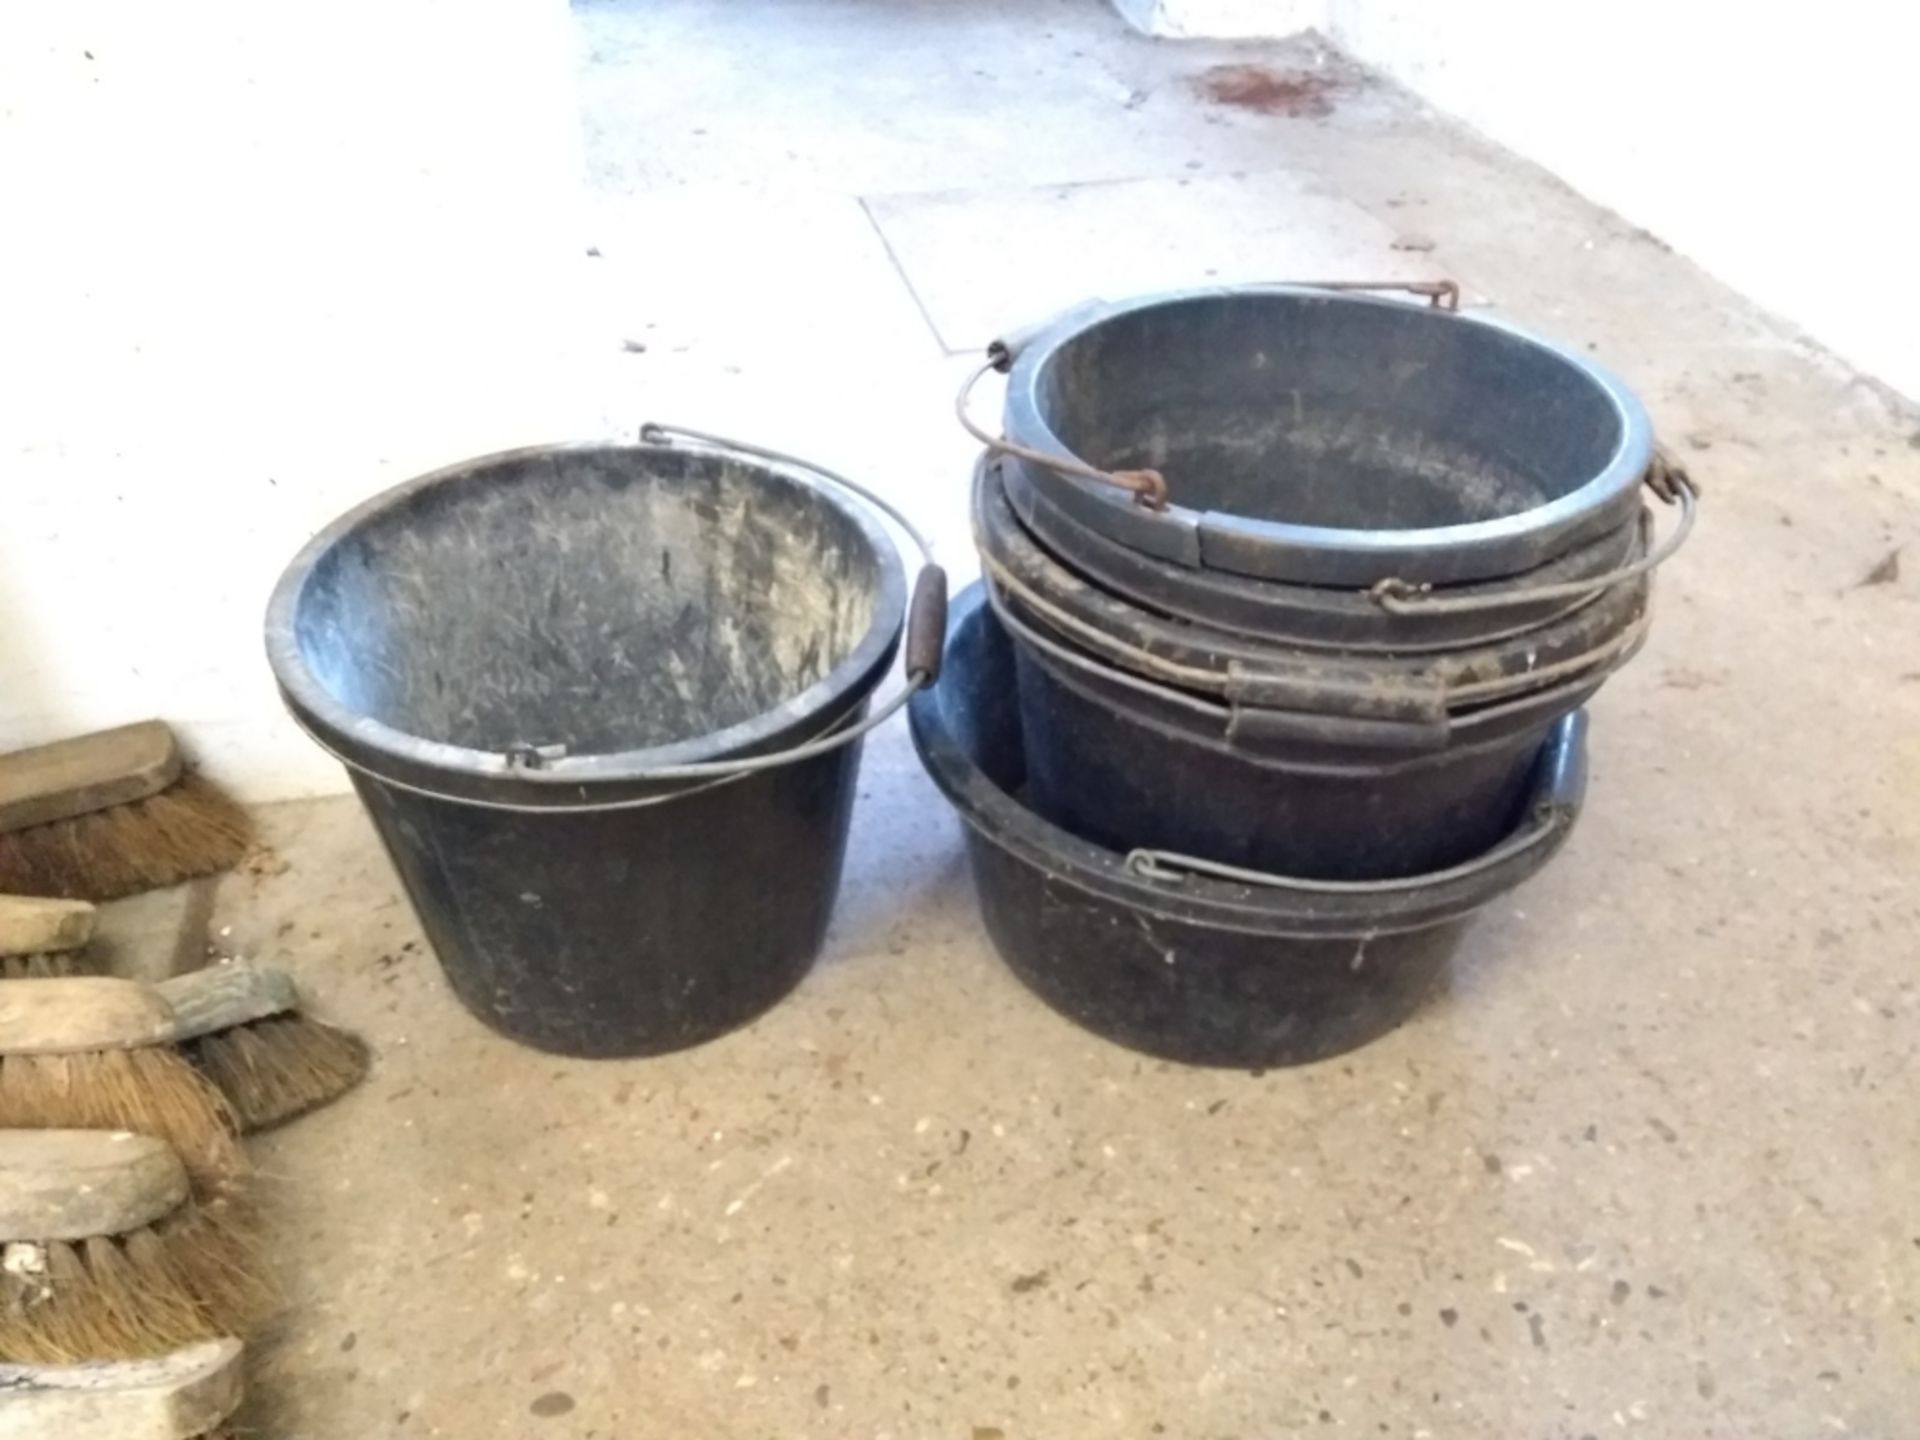 6 x plastic buckets and 2 x metal buckets